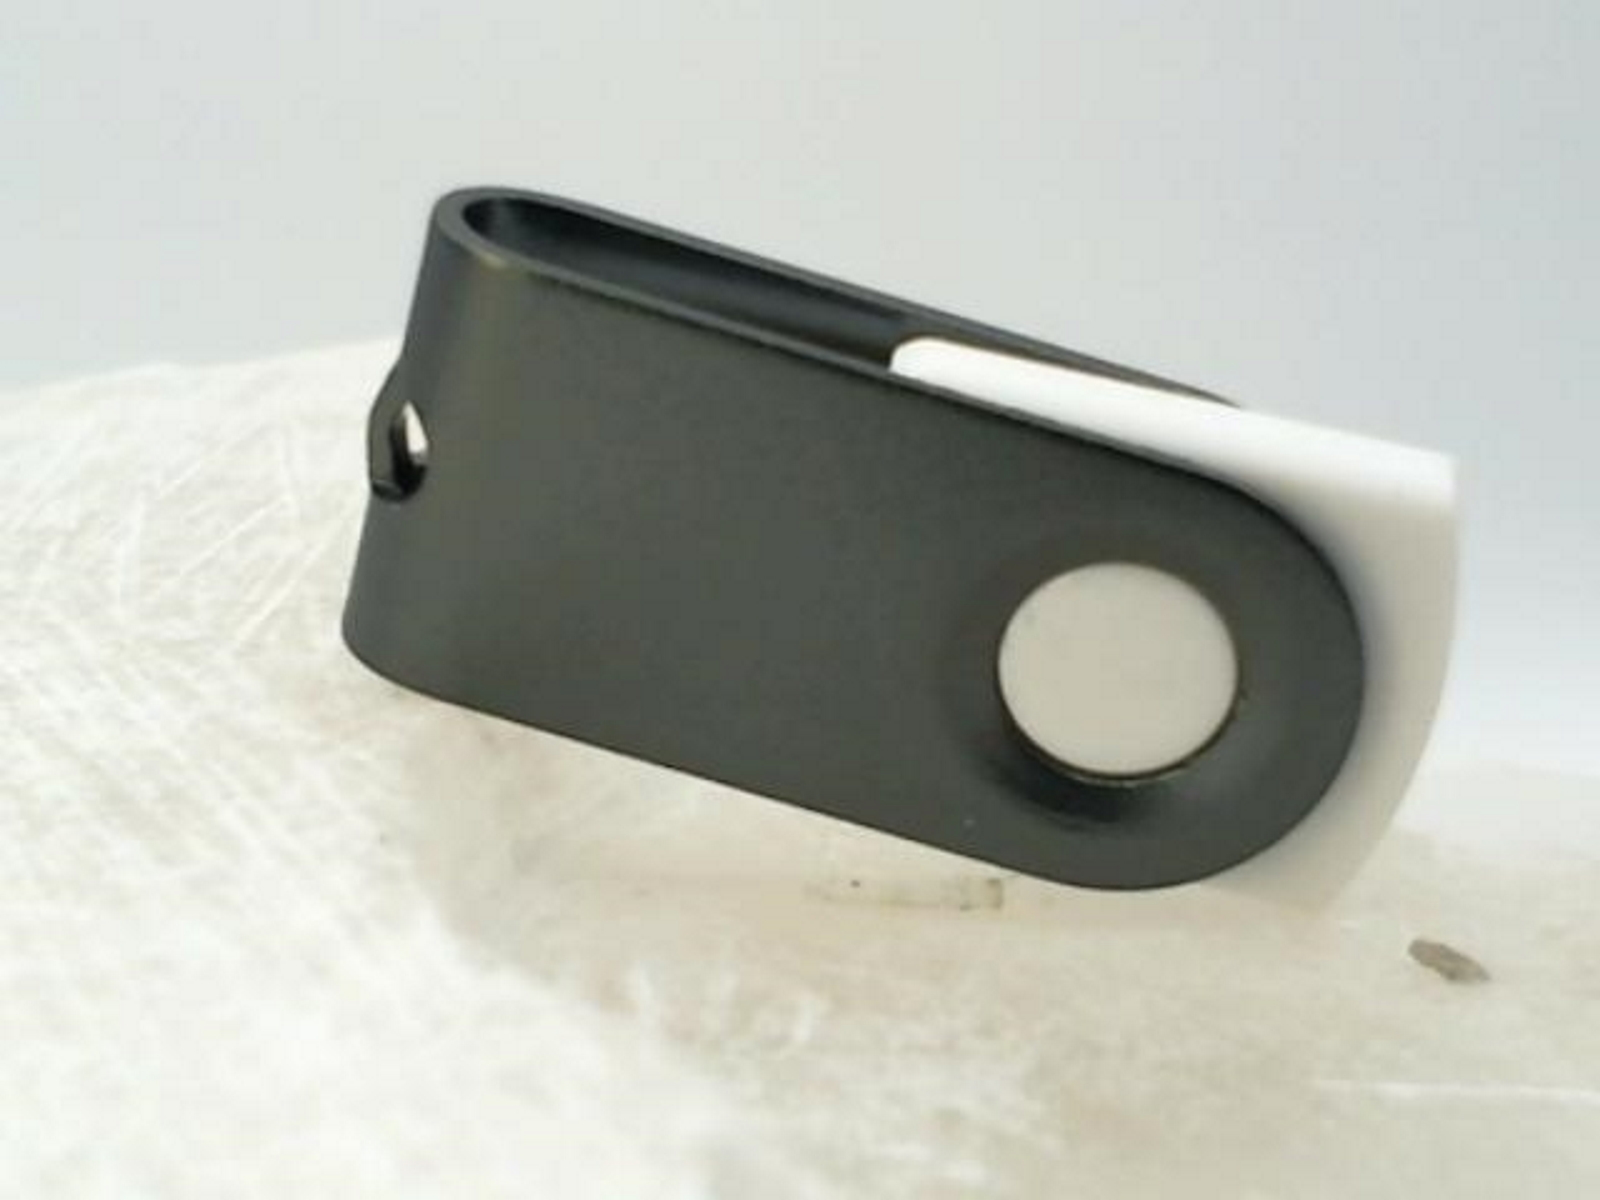 GB) 1 GERMANY (Weiß-Graumetall, ® USB-Stick USB MINI-SWIVEL